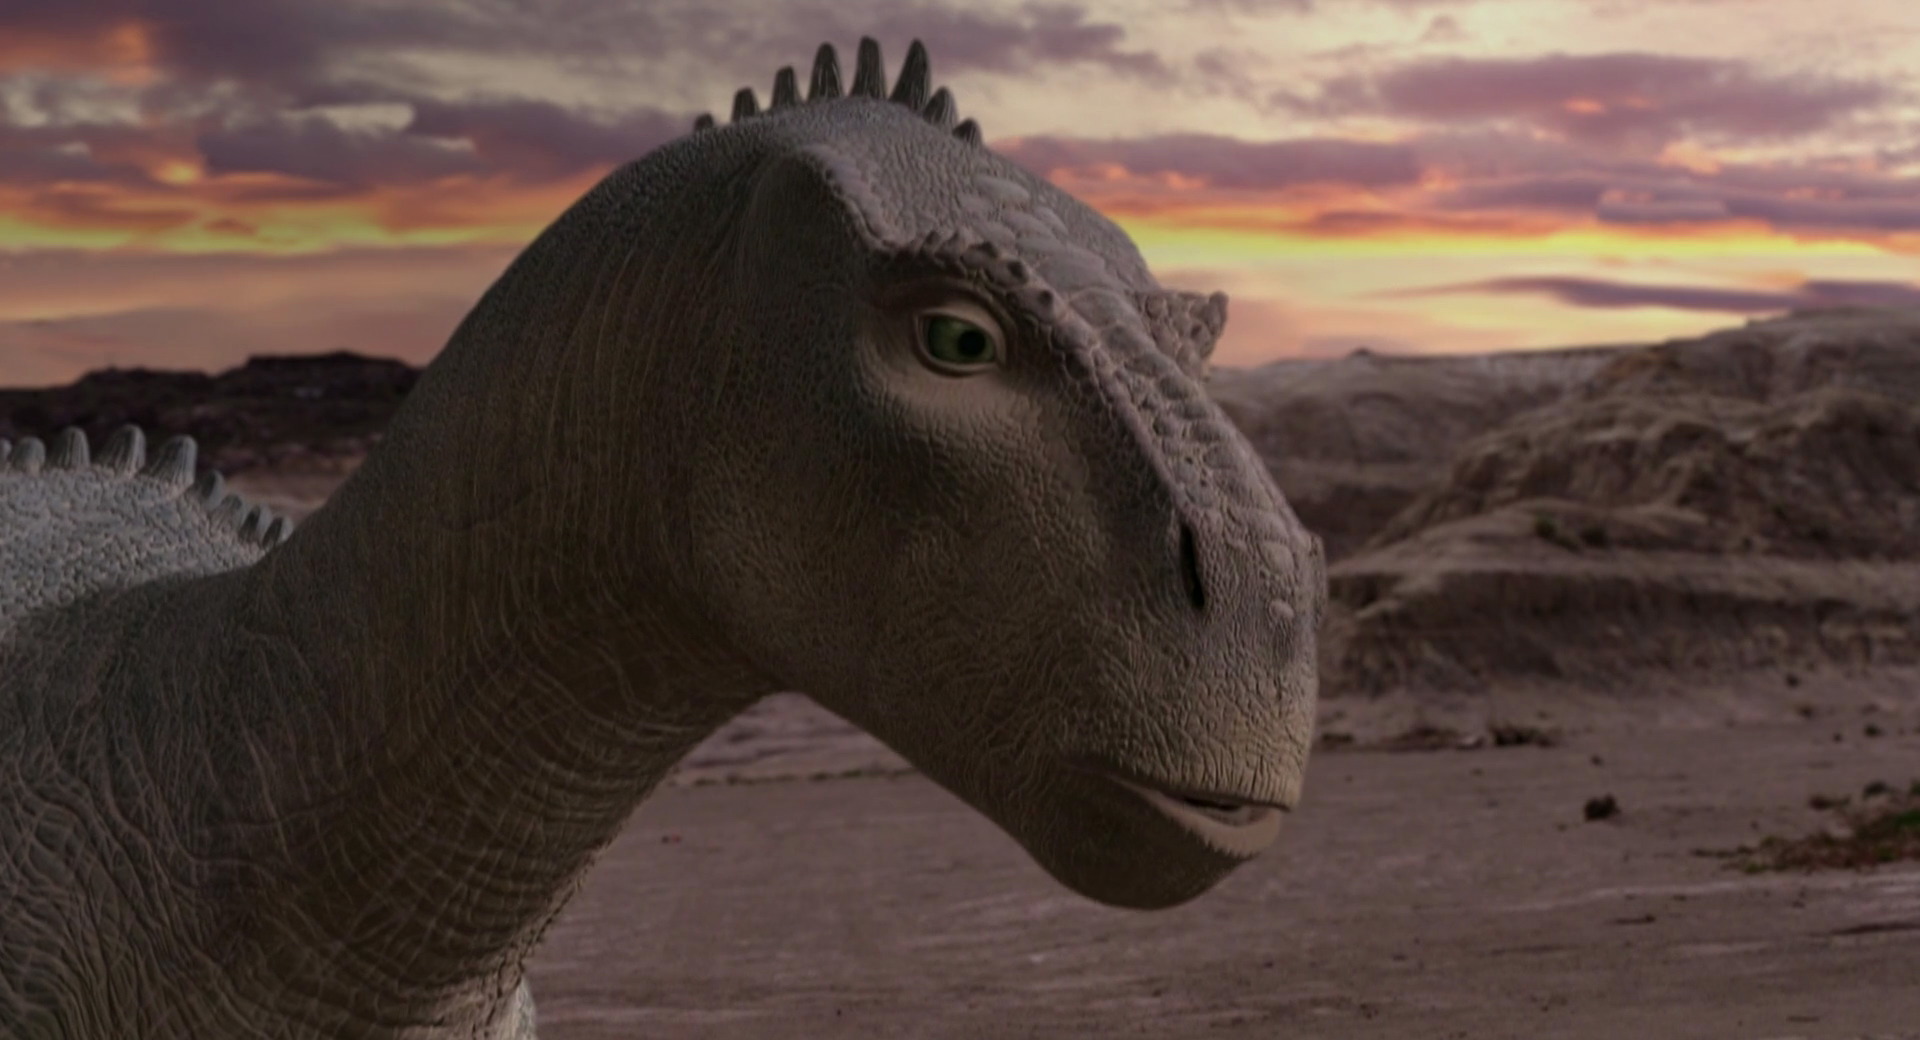 Dinosauri – Preistorica avventura animata contro l’estinzione